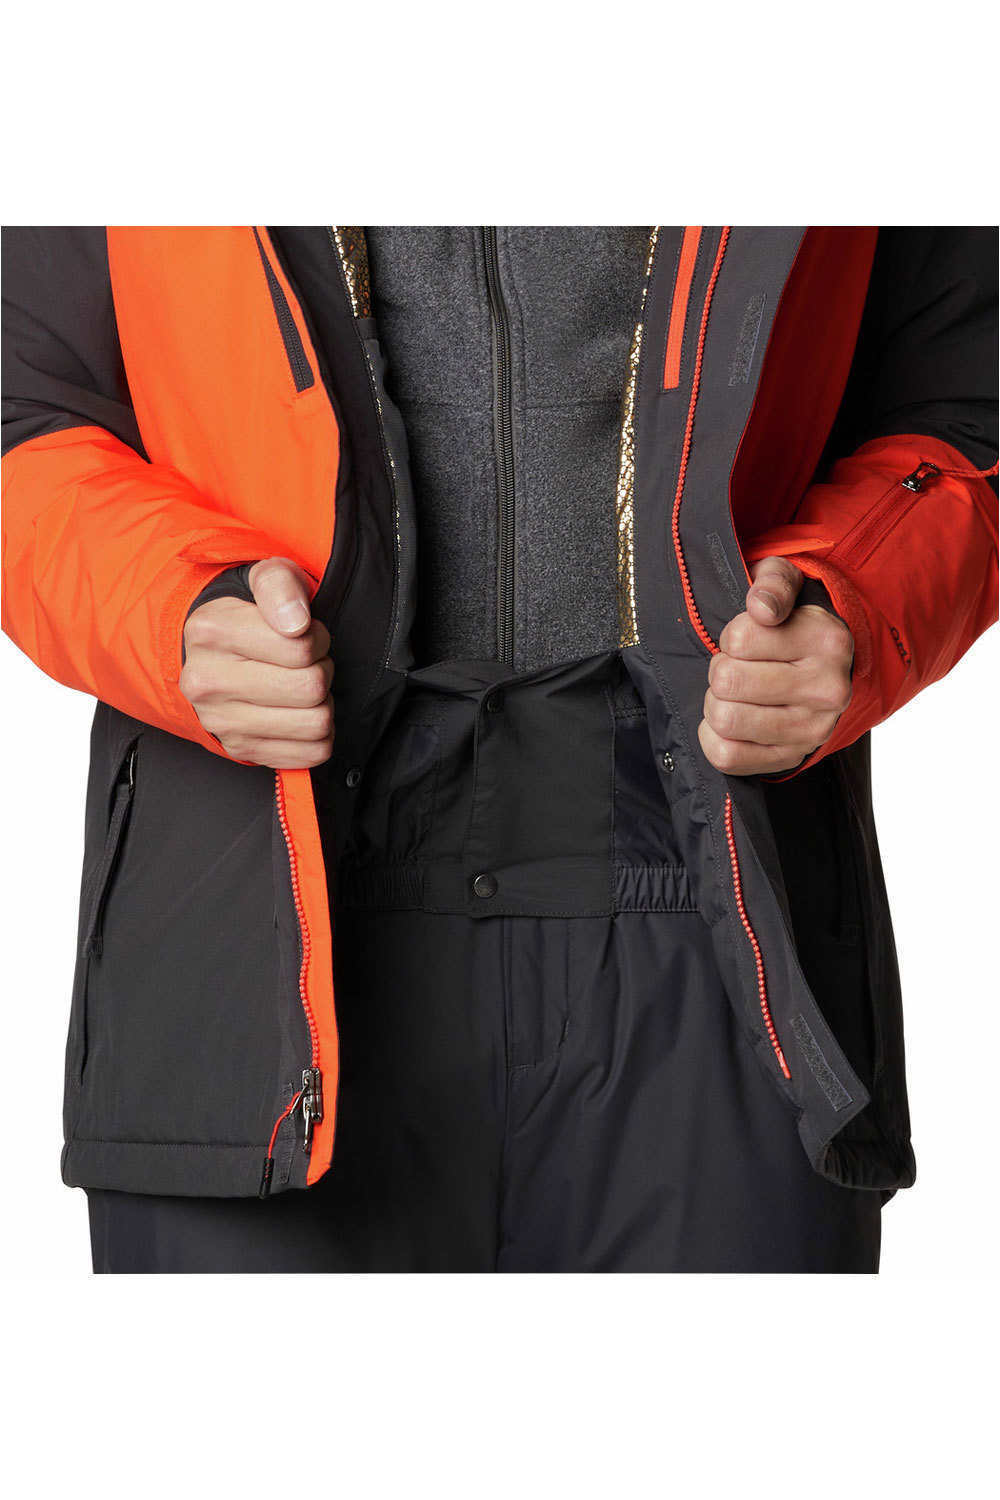 Columbia chaqueta esquí hombre AERIAL ASCENDER RED QUARTZ 10